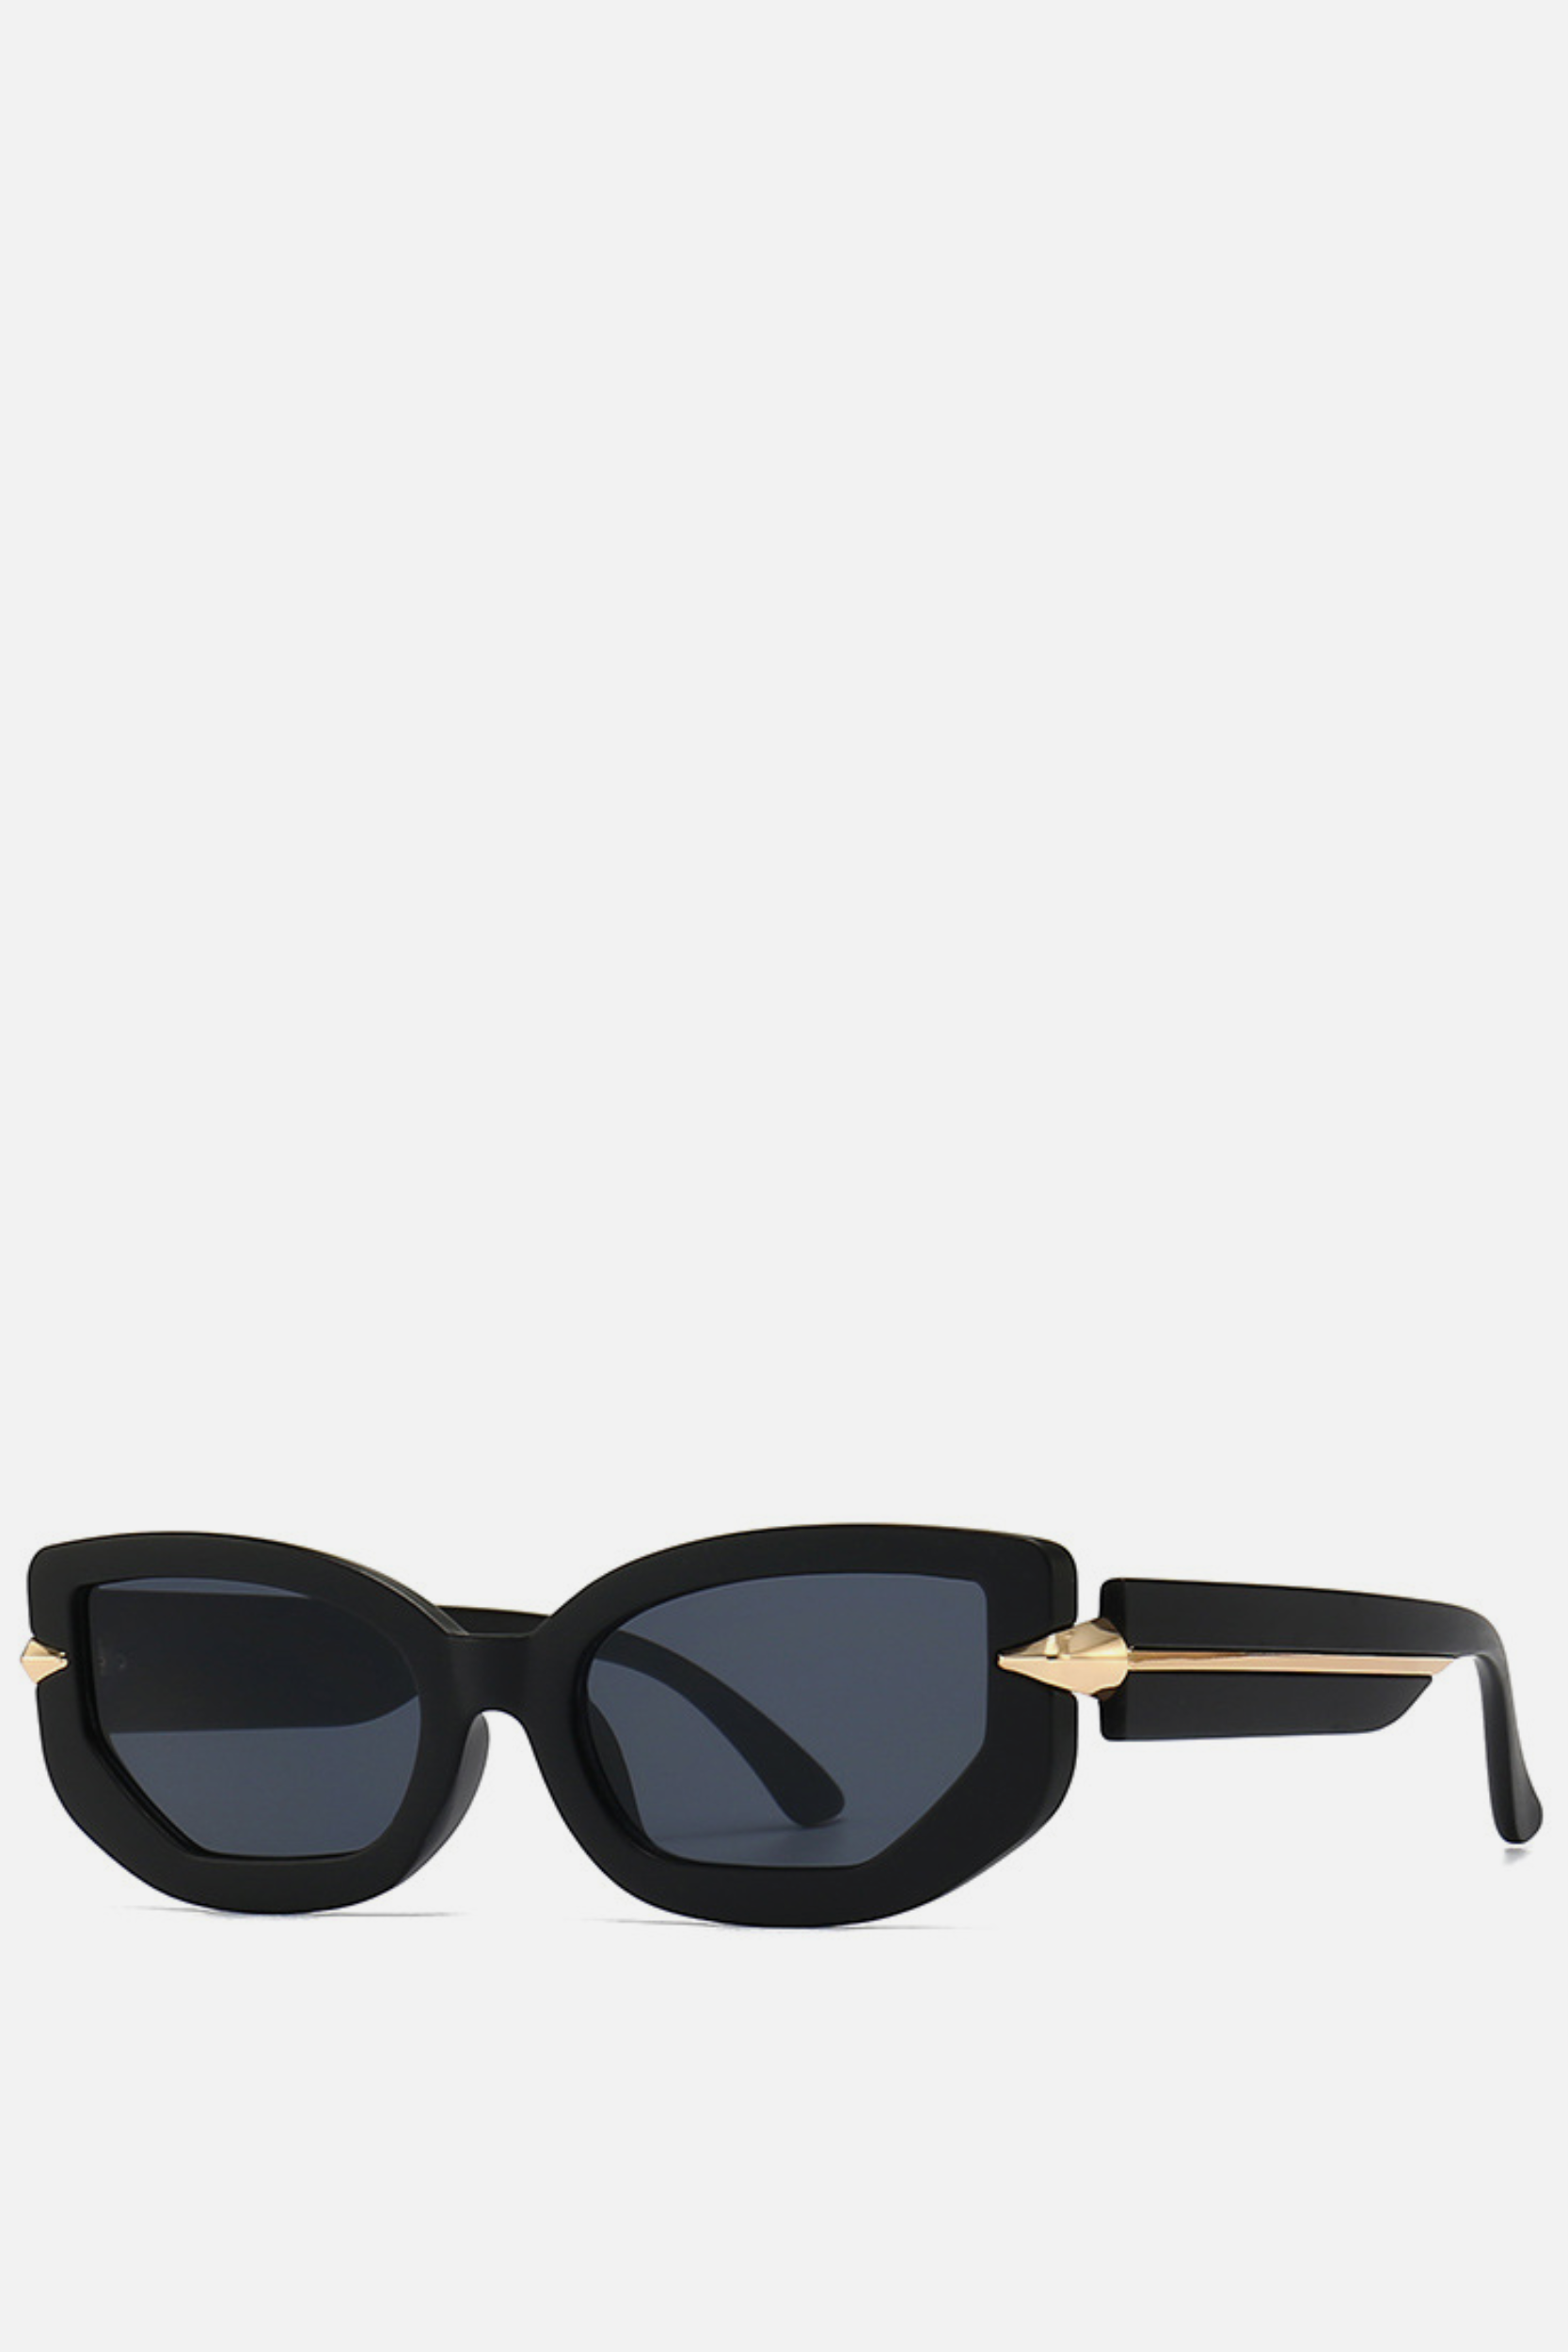 NEVADA Black Sunglasses